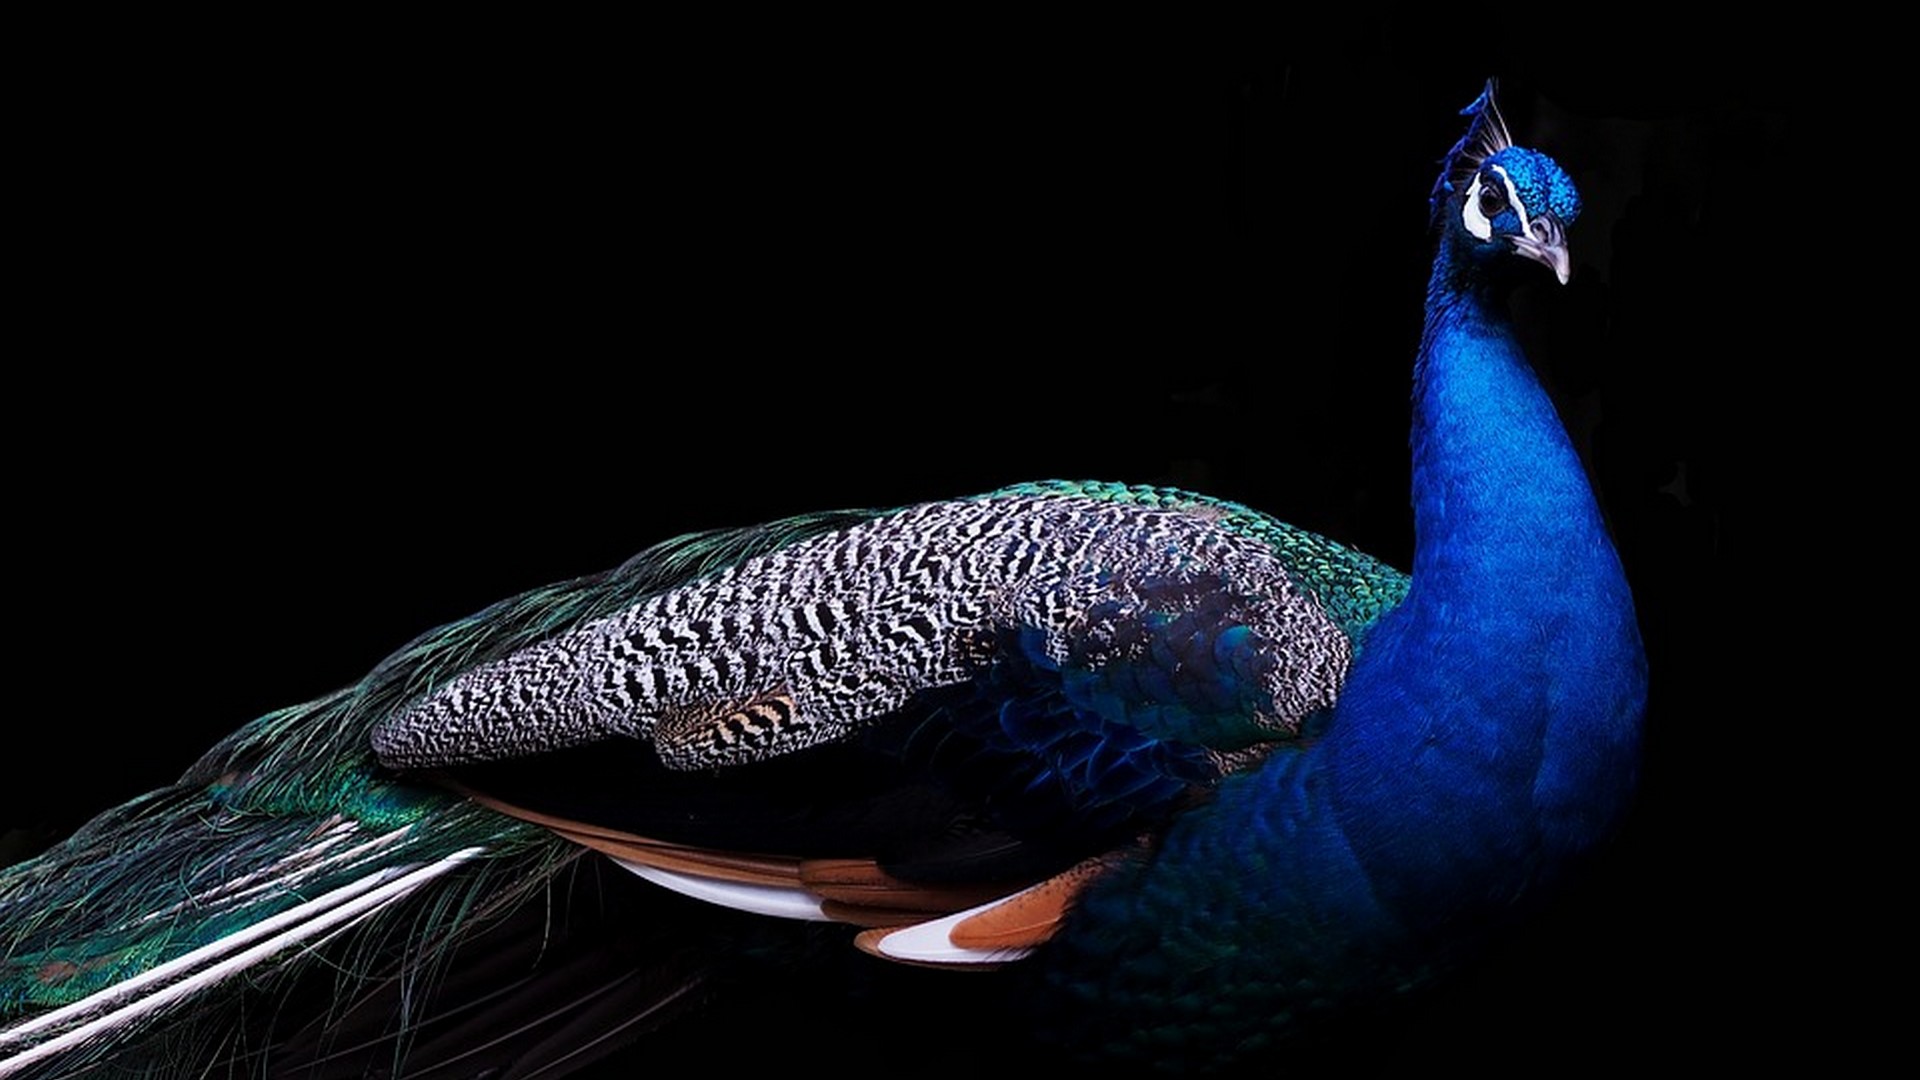 HD Peacock Bird Wallpaper 1920x1080